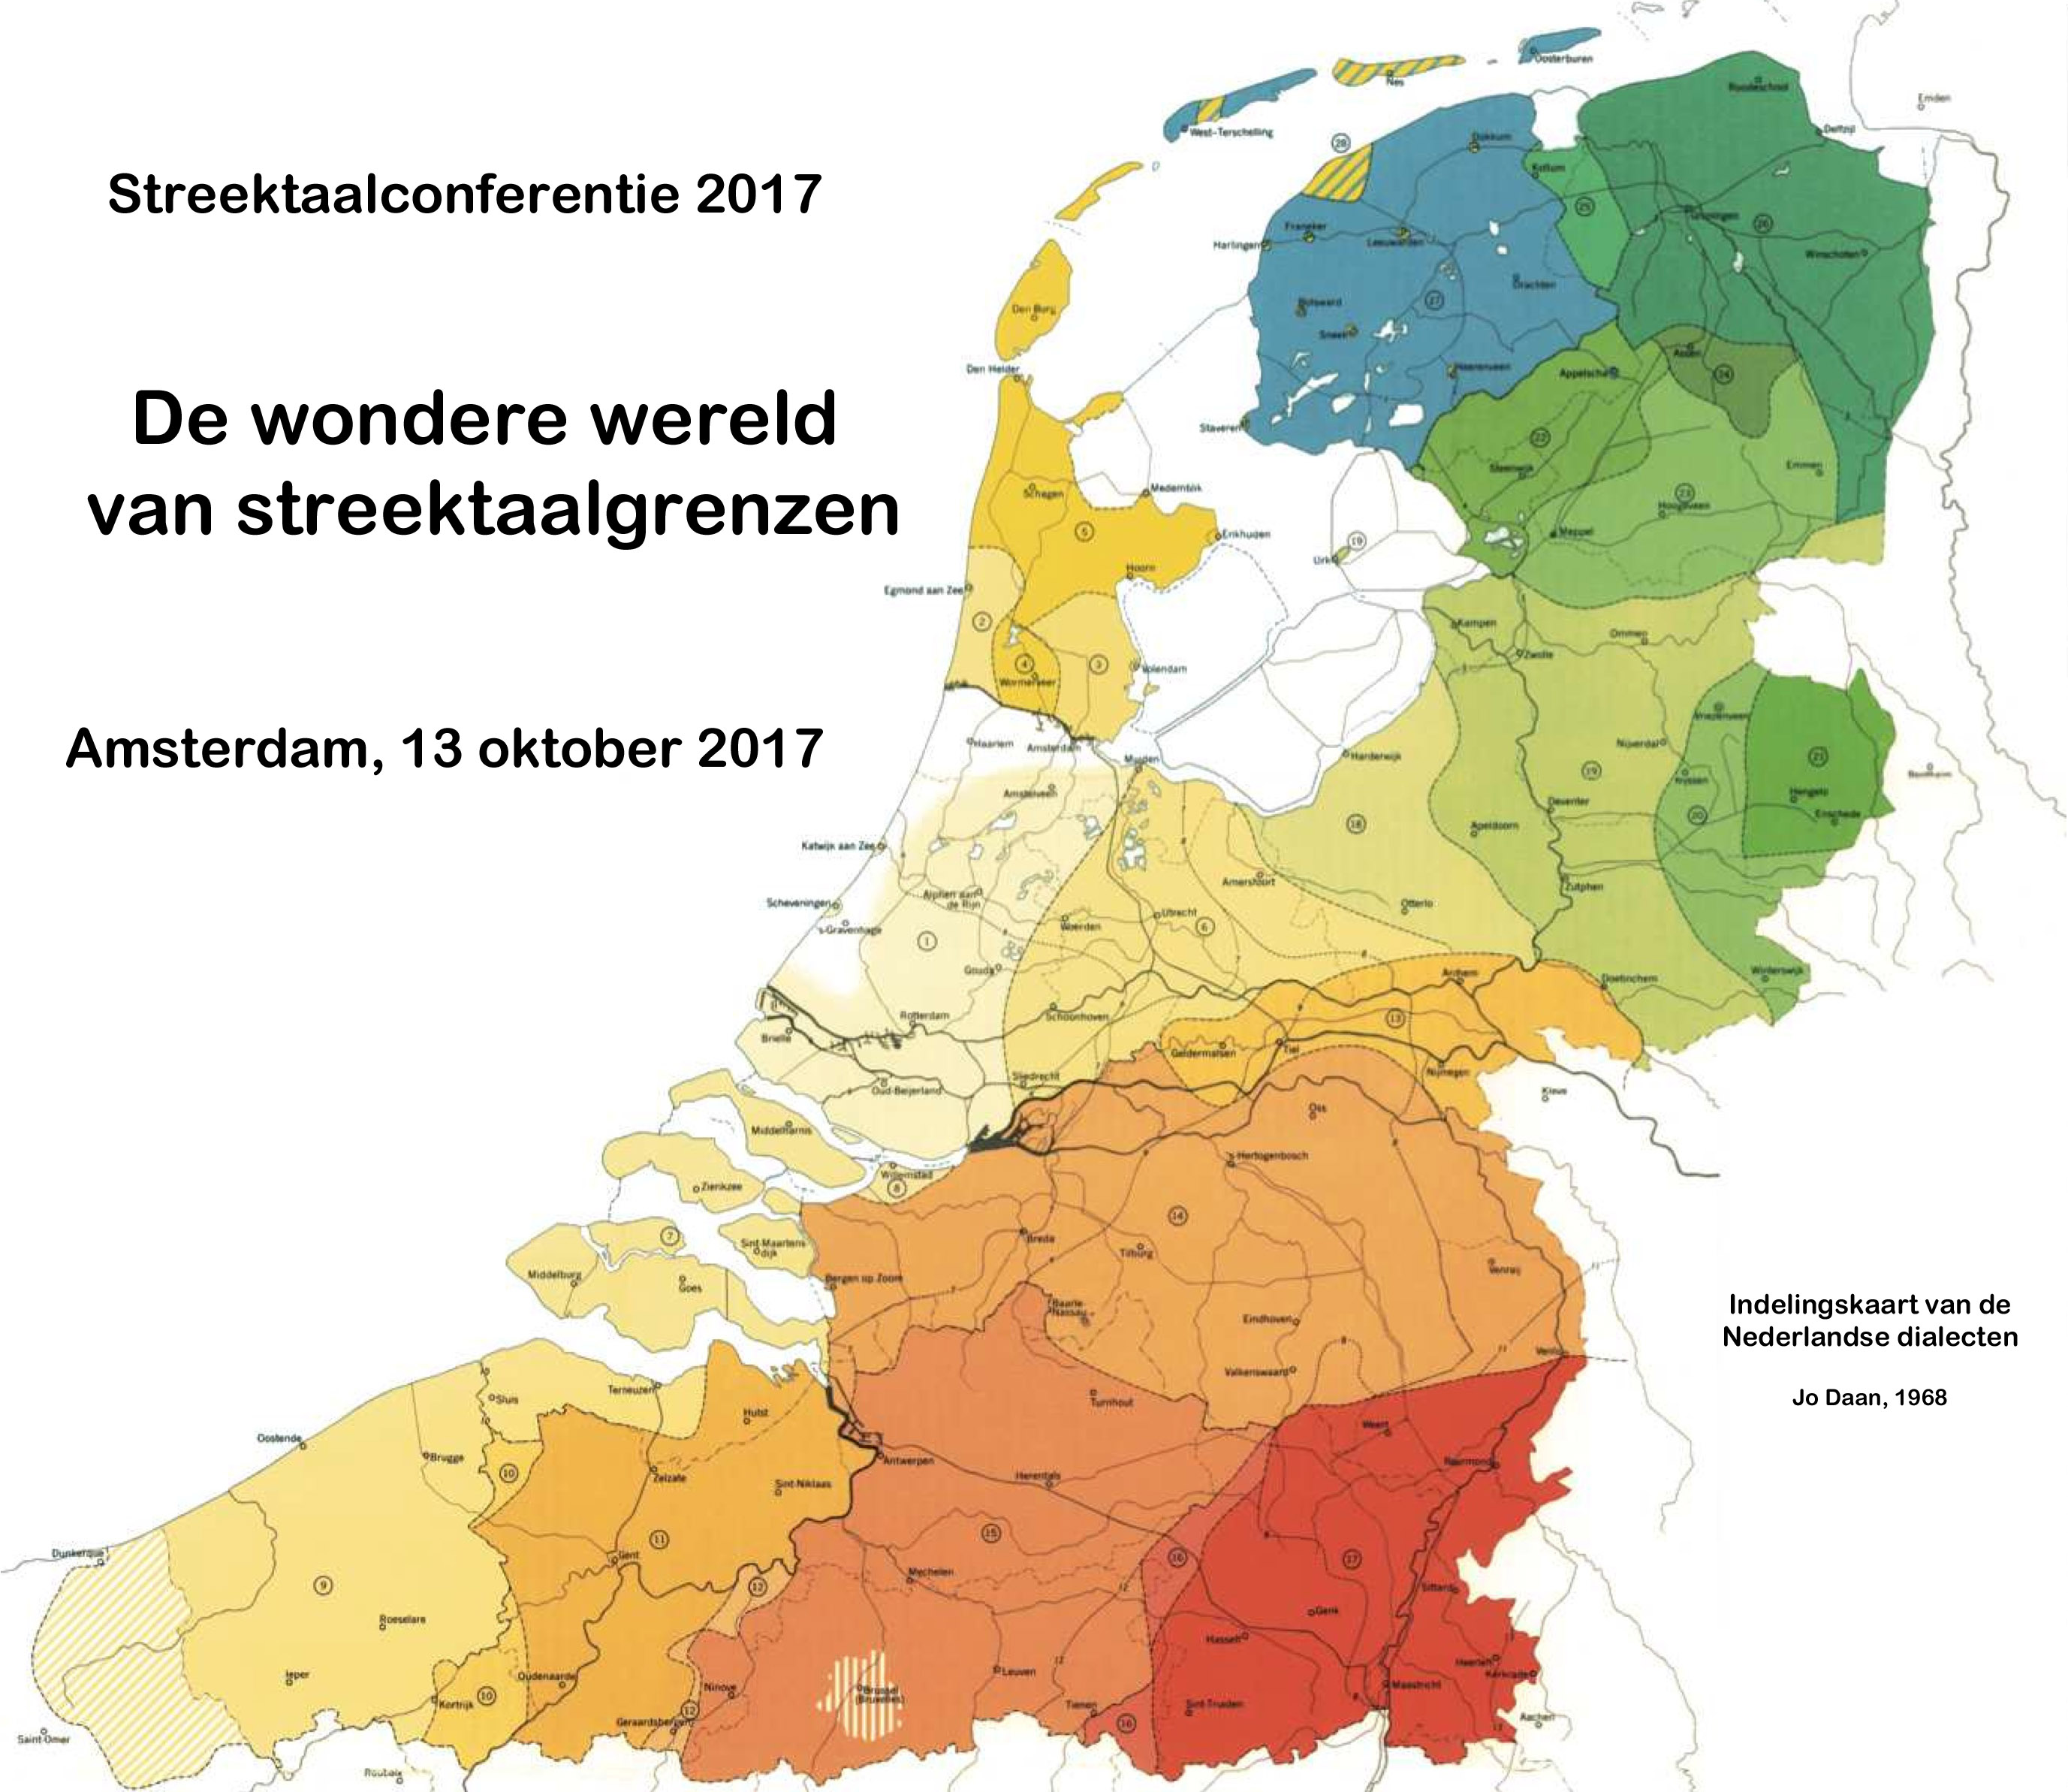 Indelingskaart Nederlandse dialecten